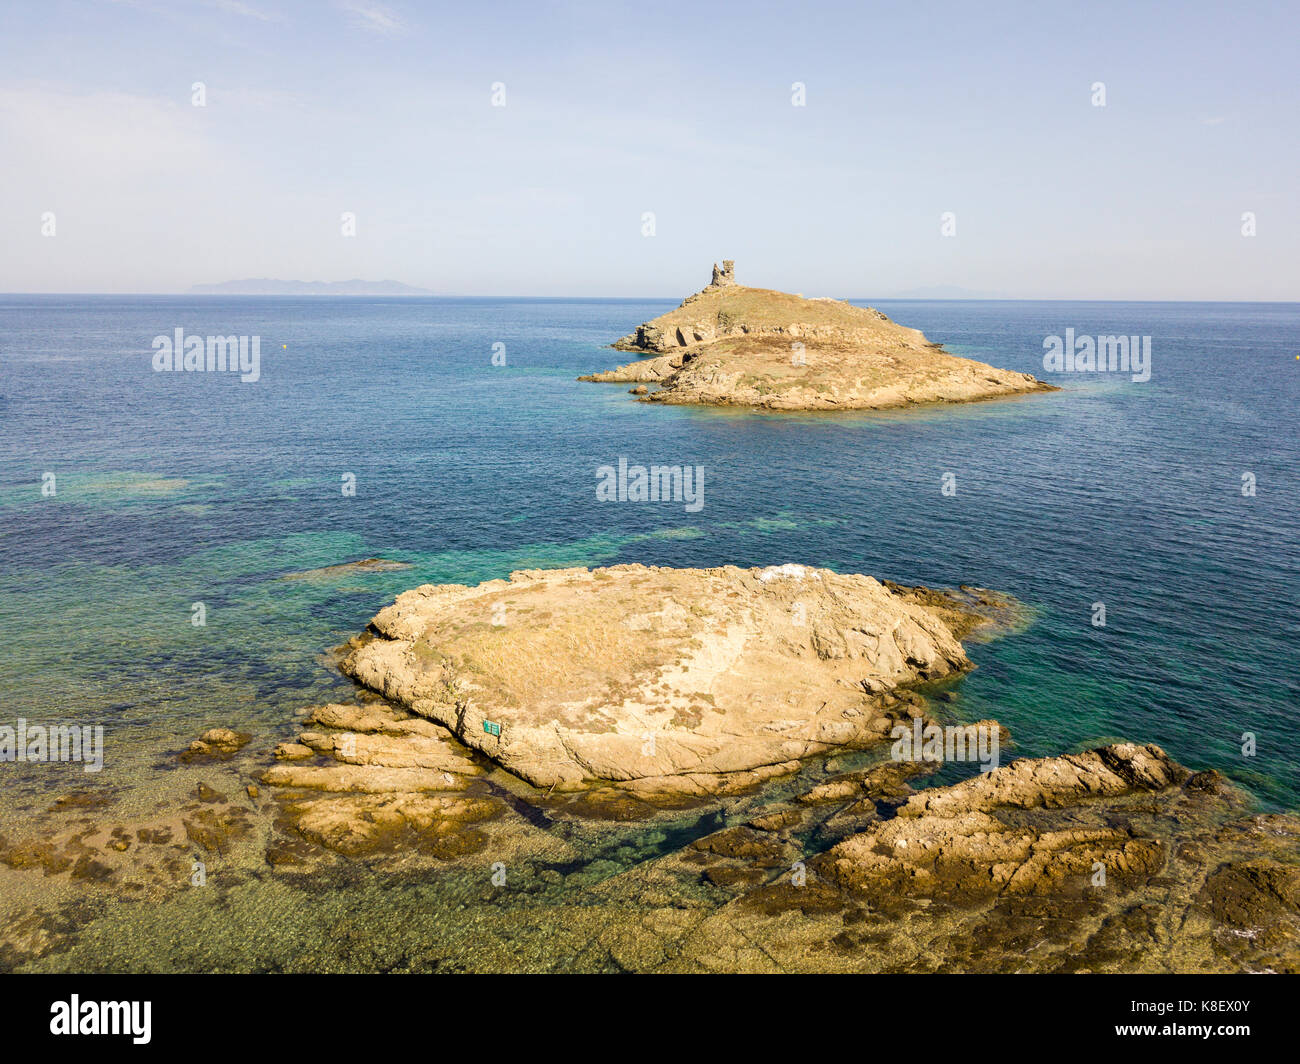 Luftaufnahme der Inseln Finocchiarola, Mezzana, Terra, Halbinsel von Cap Corse, Korsika. Tyrrhenische Meer, unbewohnte Inseln, die Teil des t Stockfoto